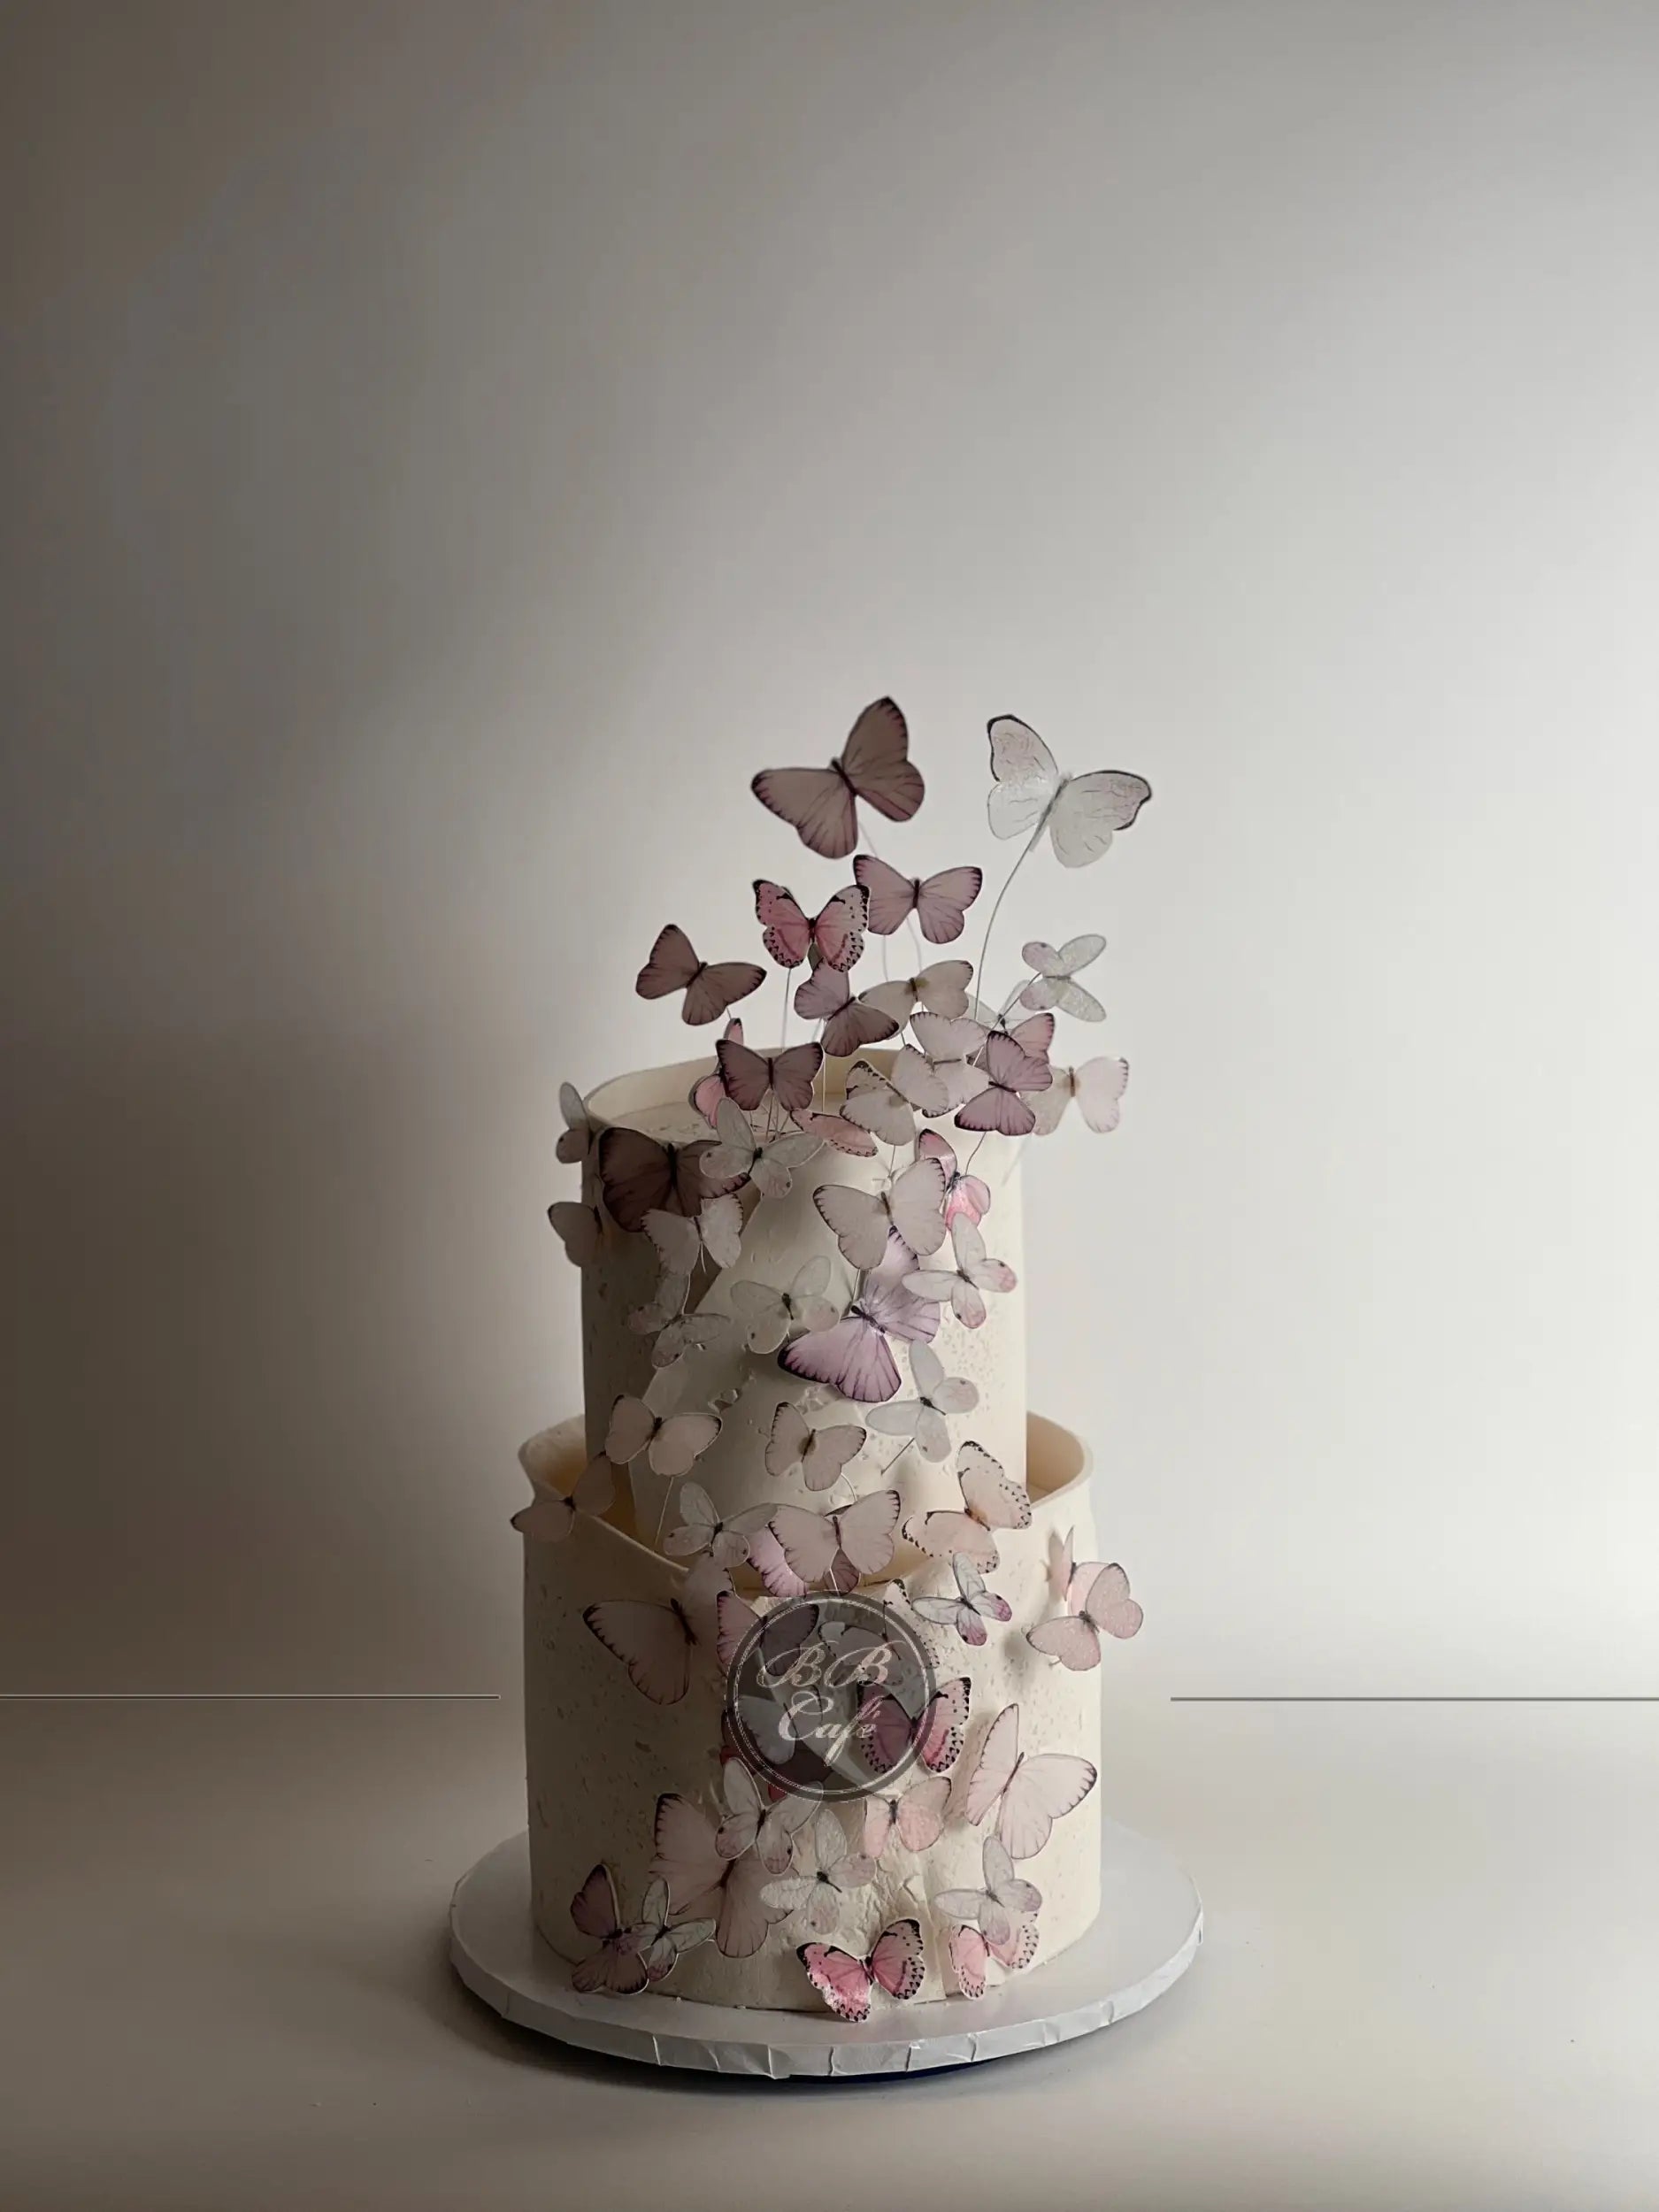 Flight of the butterflies - wedding cake